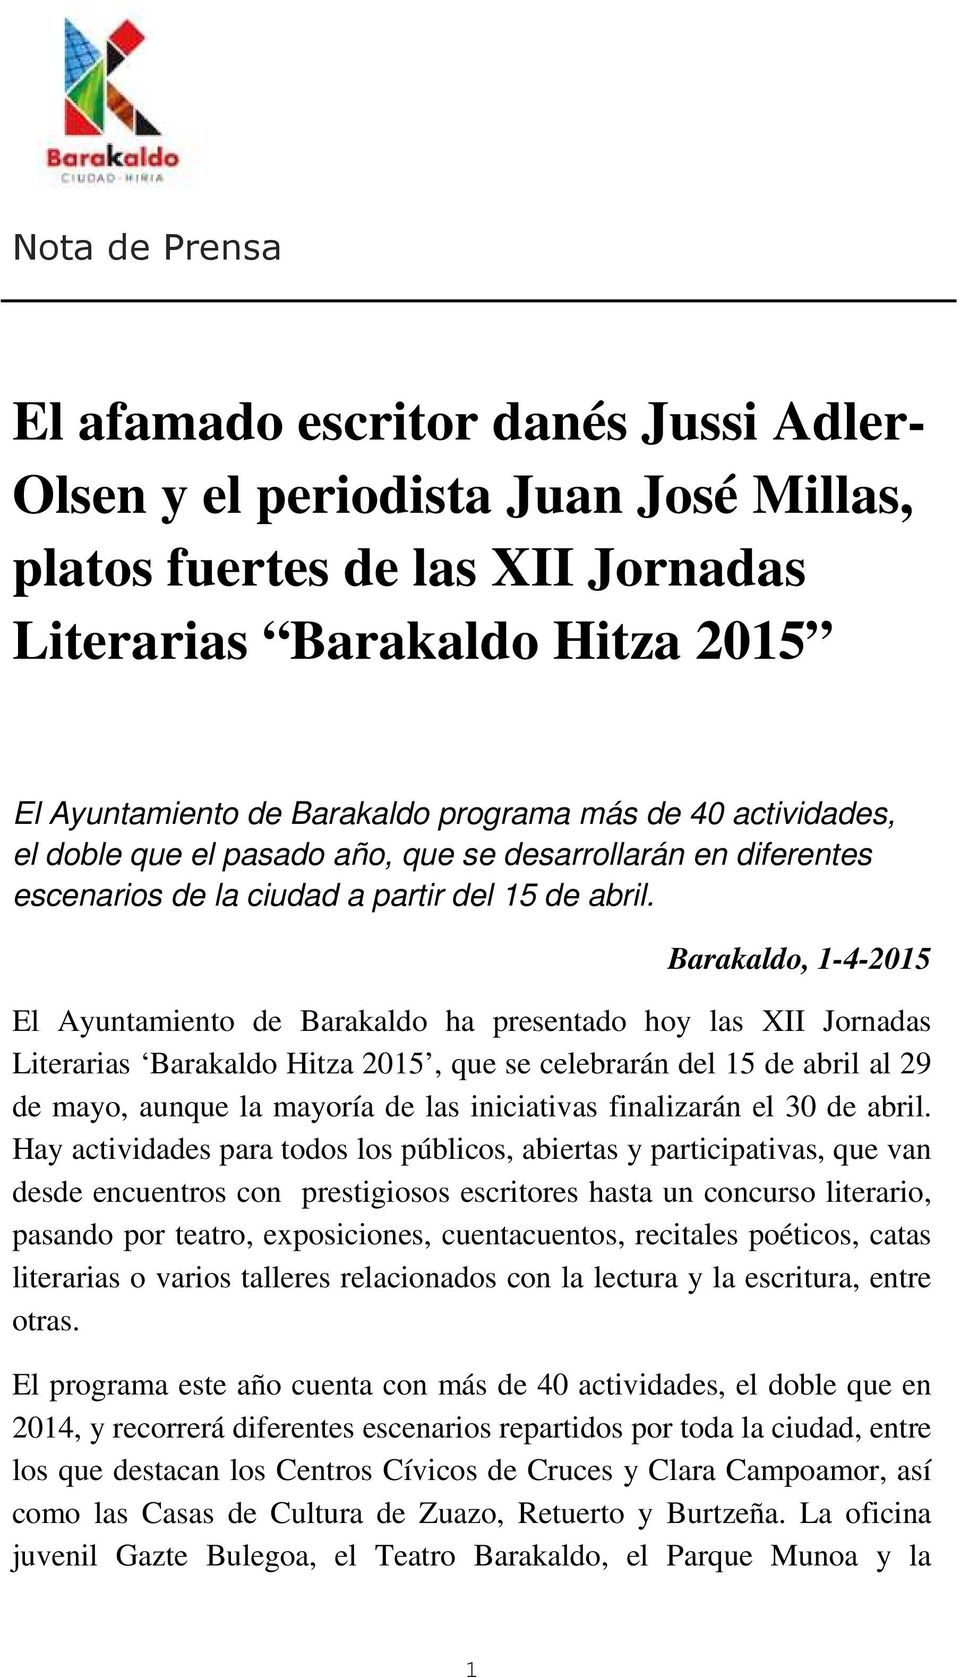 Barakaldo, 1-4-2015 El Ayuntamiento de Barakaldo ha presentado hoy las XII Jornadas Literarias Barakaldo Hitza 2015, que se celebrarán del 15 de abril al 29 de mayo, aunque la mayoría de las